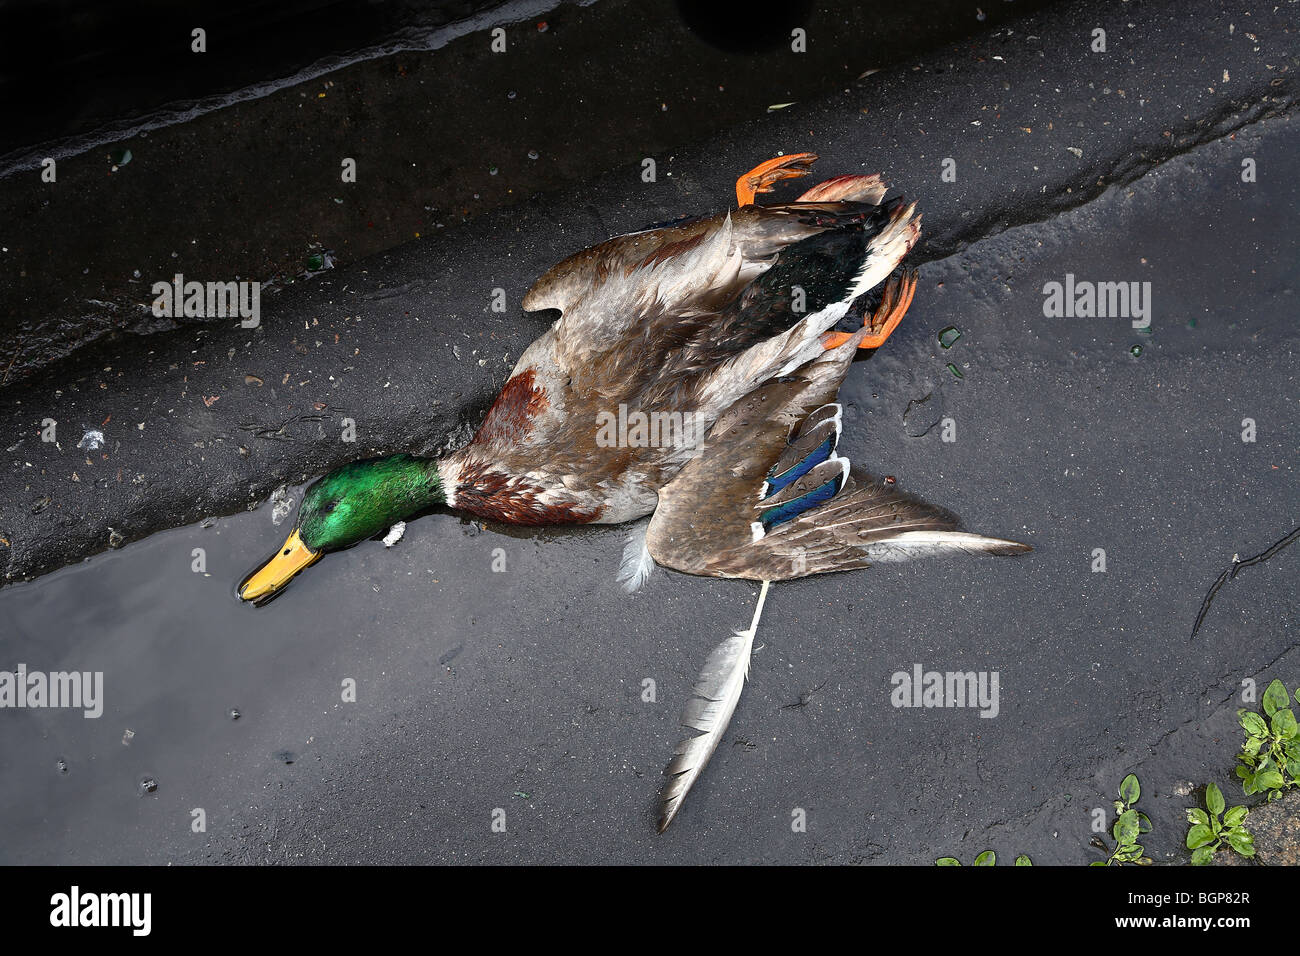 Pato muerto fotografías e imágenes de alta resolución - Página 2 - Alamy